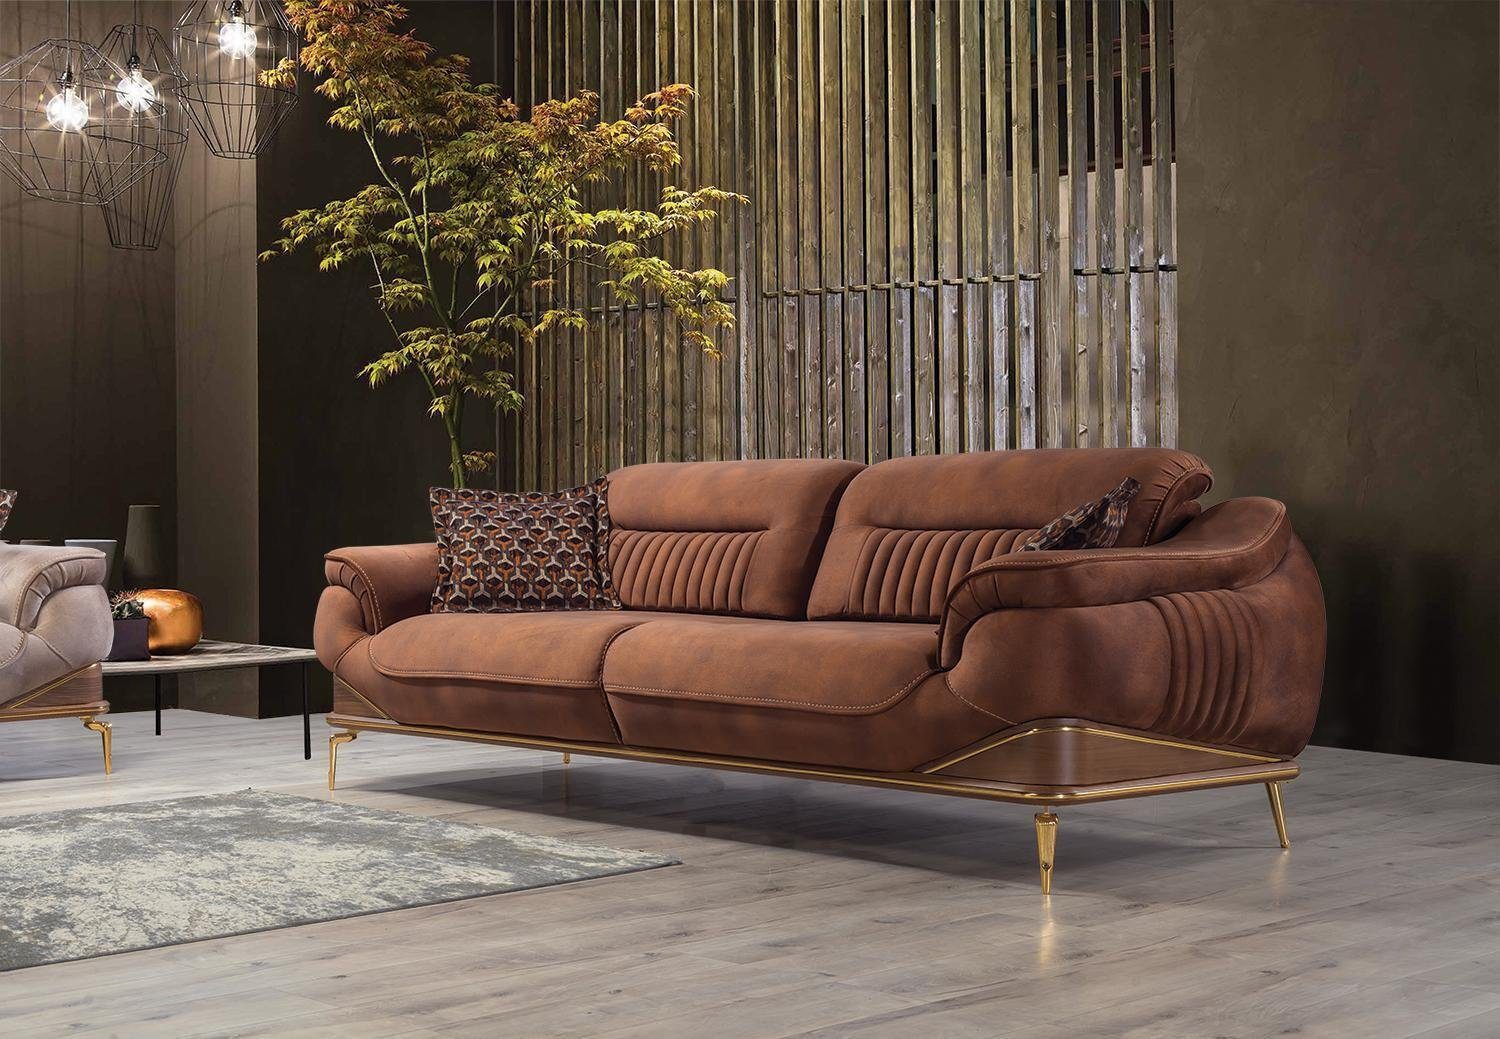 JVmoebel Sofa Luxus Neu Dreisitzer Sofa Couch Wohnzimmer Modern Design Sofas, 1 Teile, Made in Europa